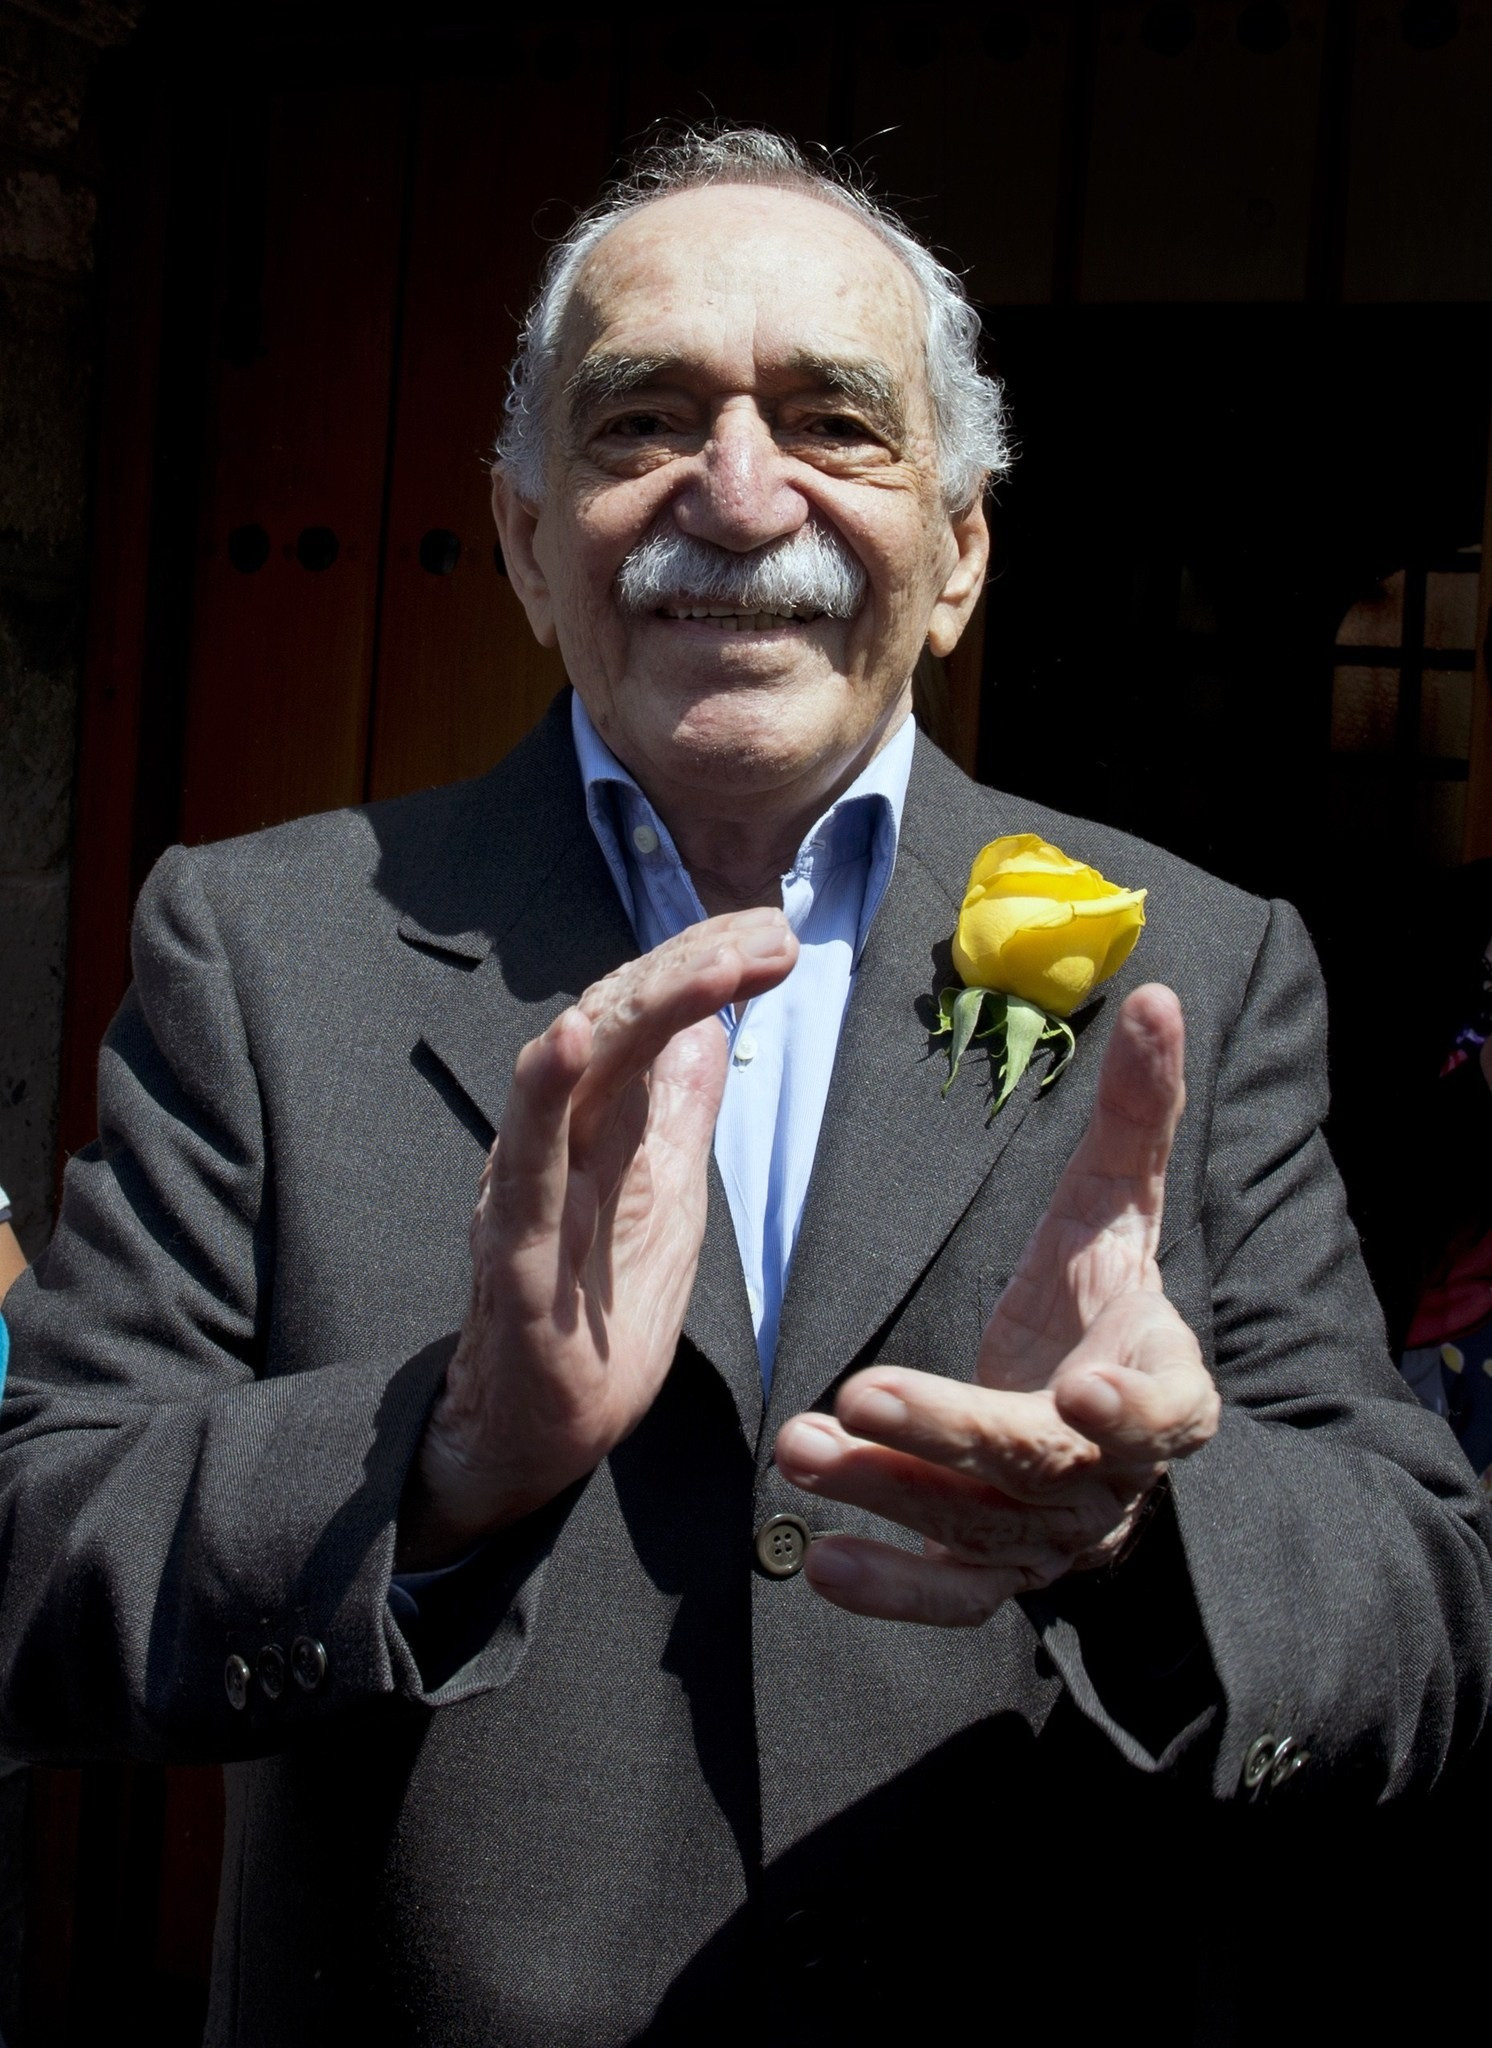 Trăm năm cô đơn cùng Gabriel García Márquez - 4